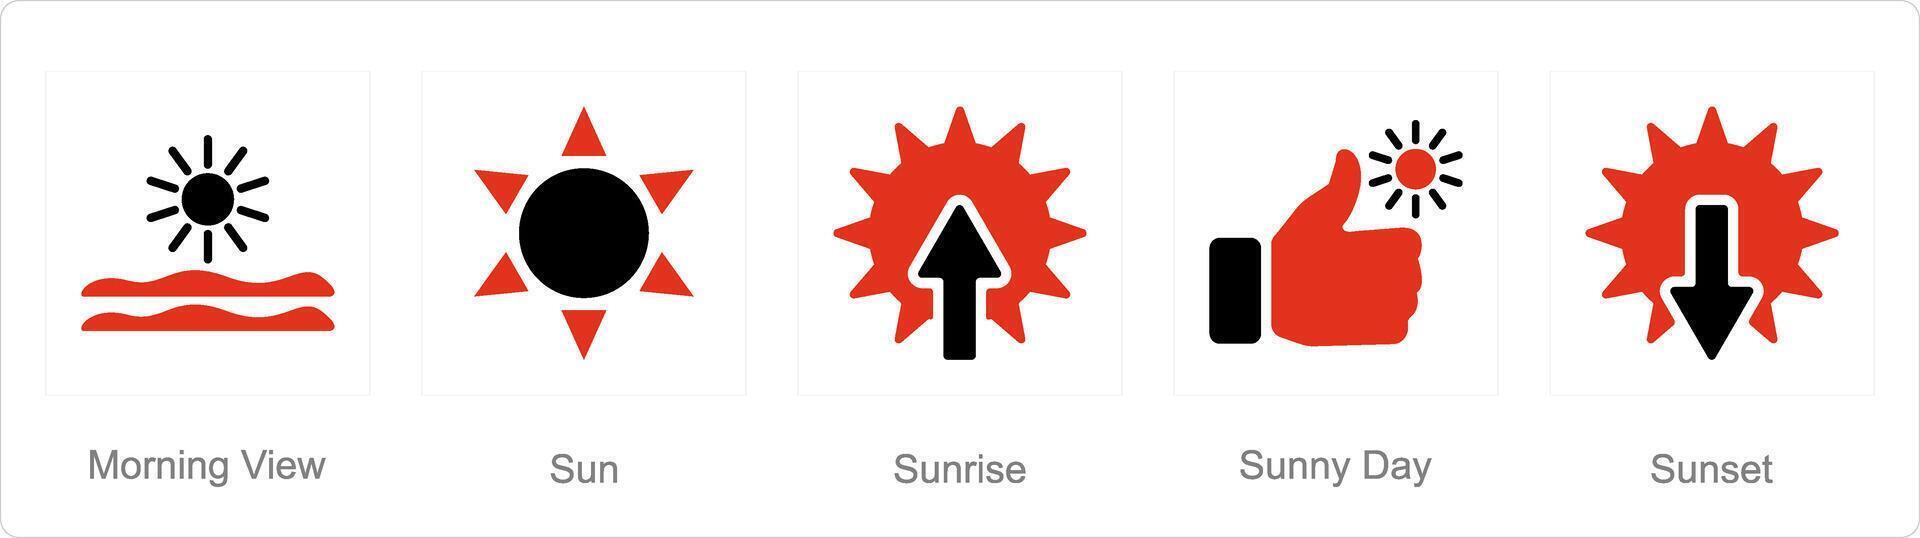 en uppsättning av 5 blanda ikoner som morgon- se, Sol, soluppgång vektor